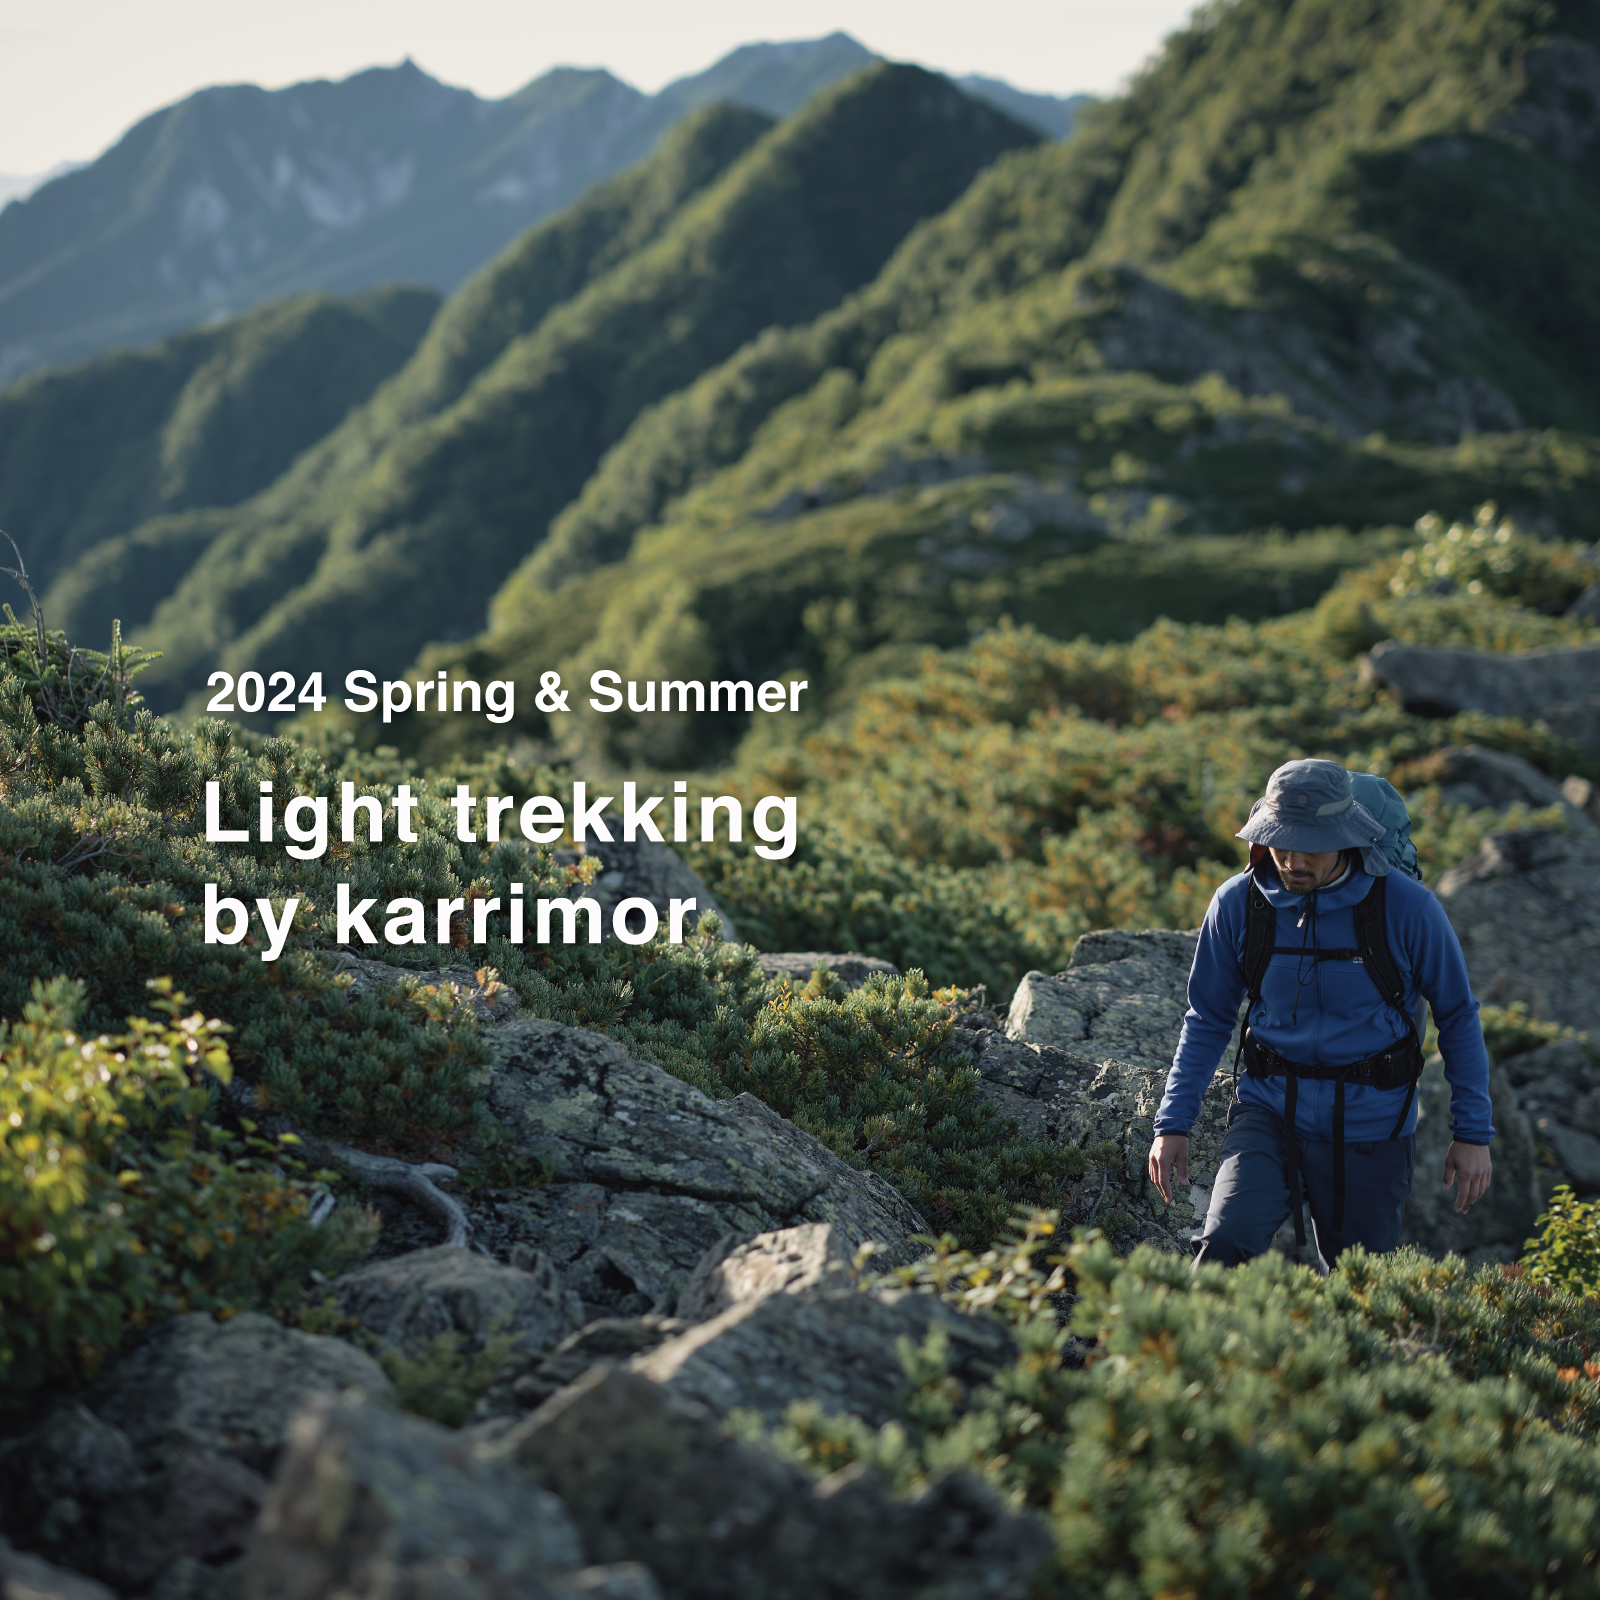 2024 S/S Light trekking by karrimor